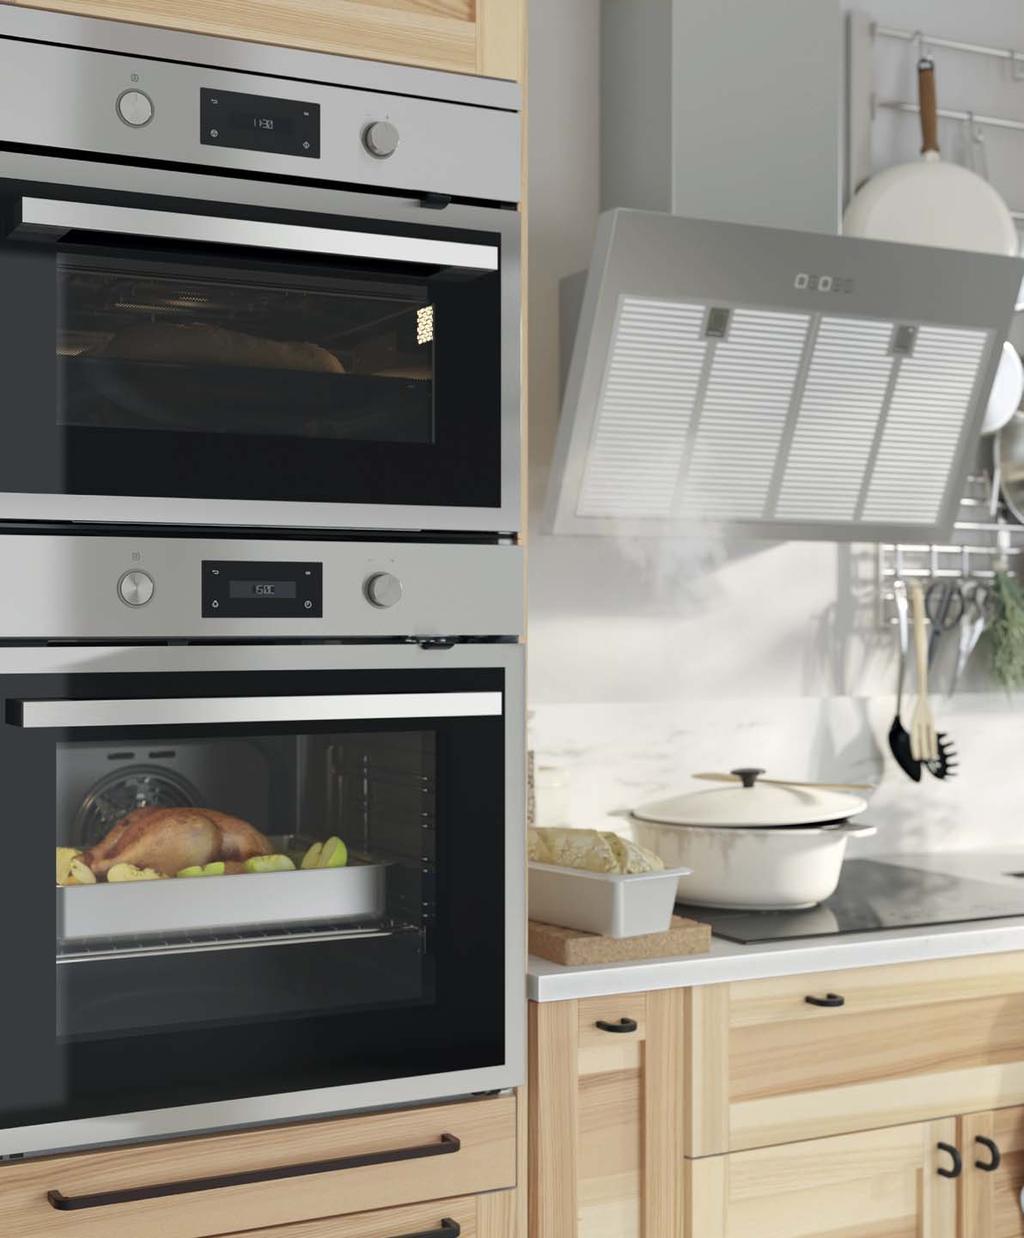 A sua escolha de eletrodomésticos Escolher a sua cozinha nova envolve algumas decisões. Que estilo procura? Que tipo de eletrodomésticos necessita? Qual é o seu orçamento?